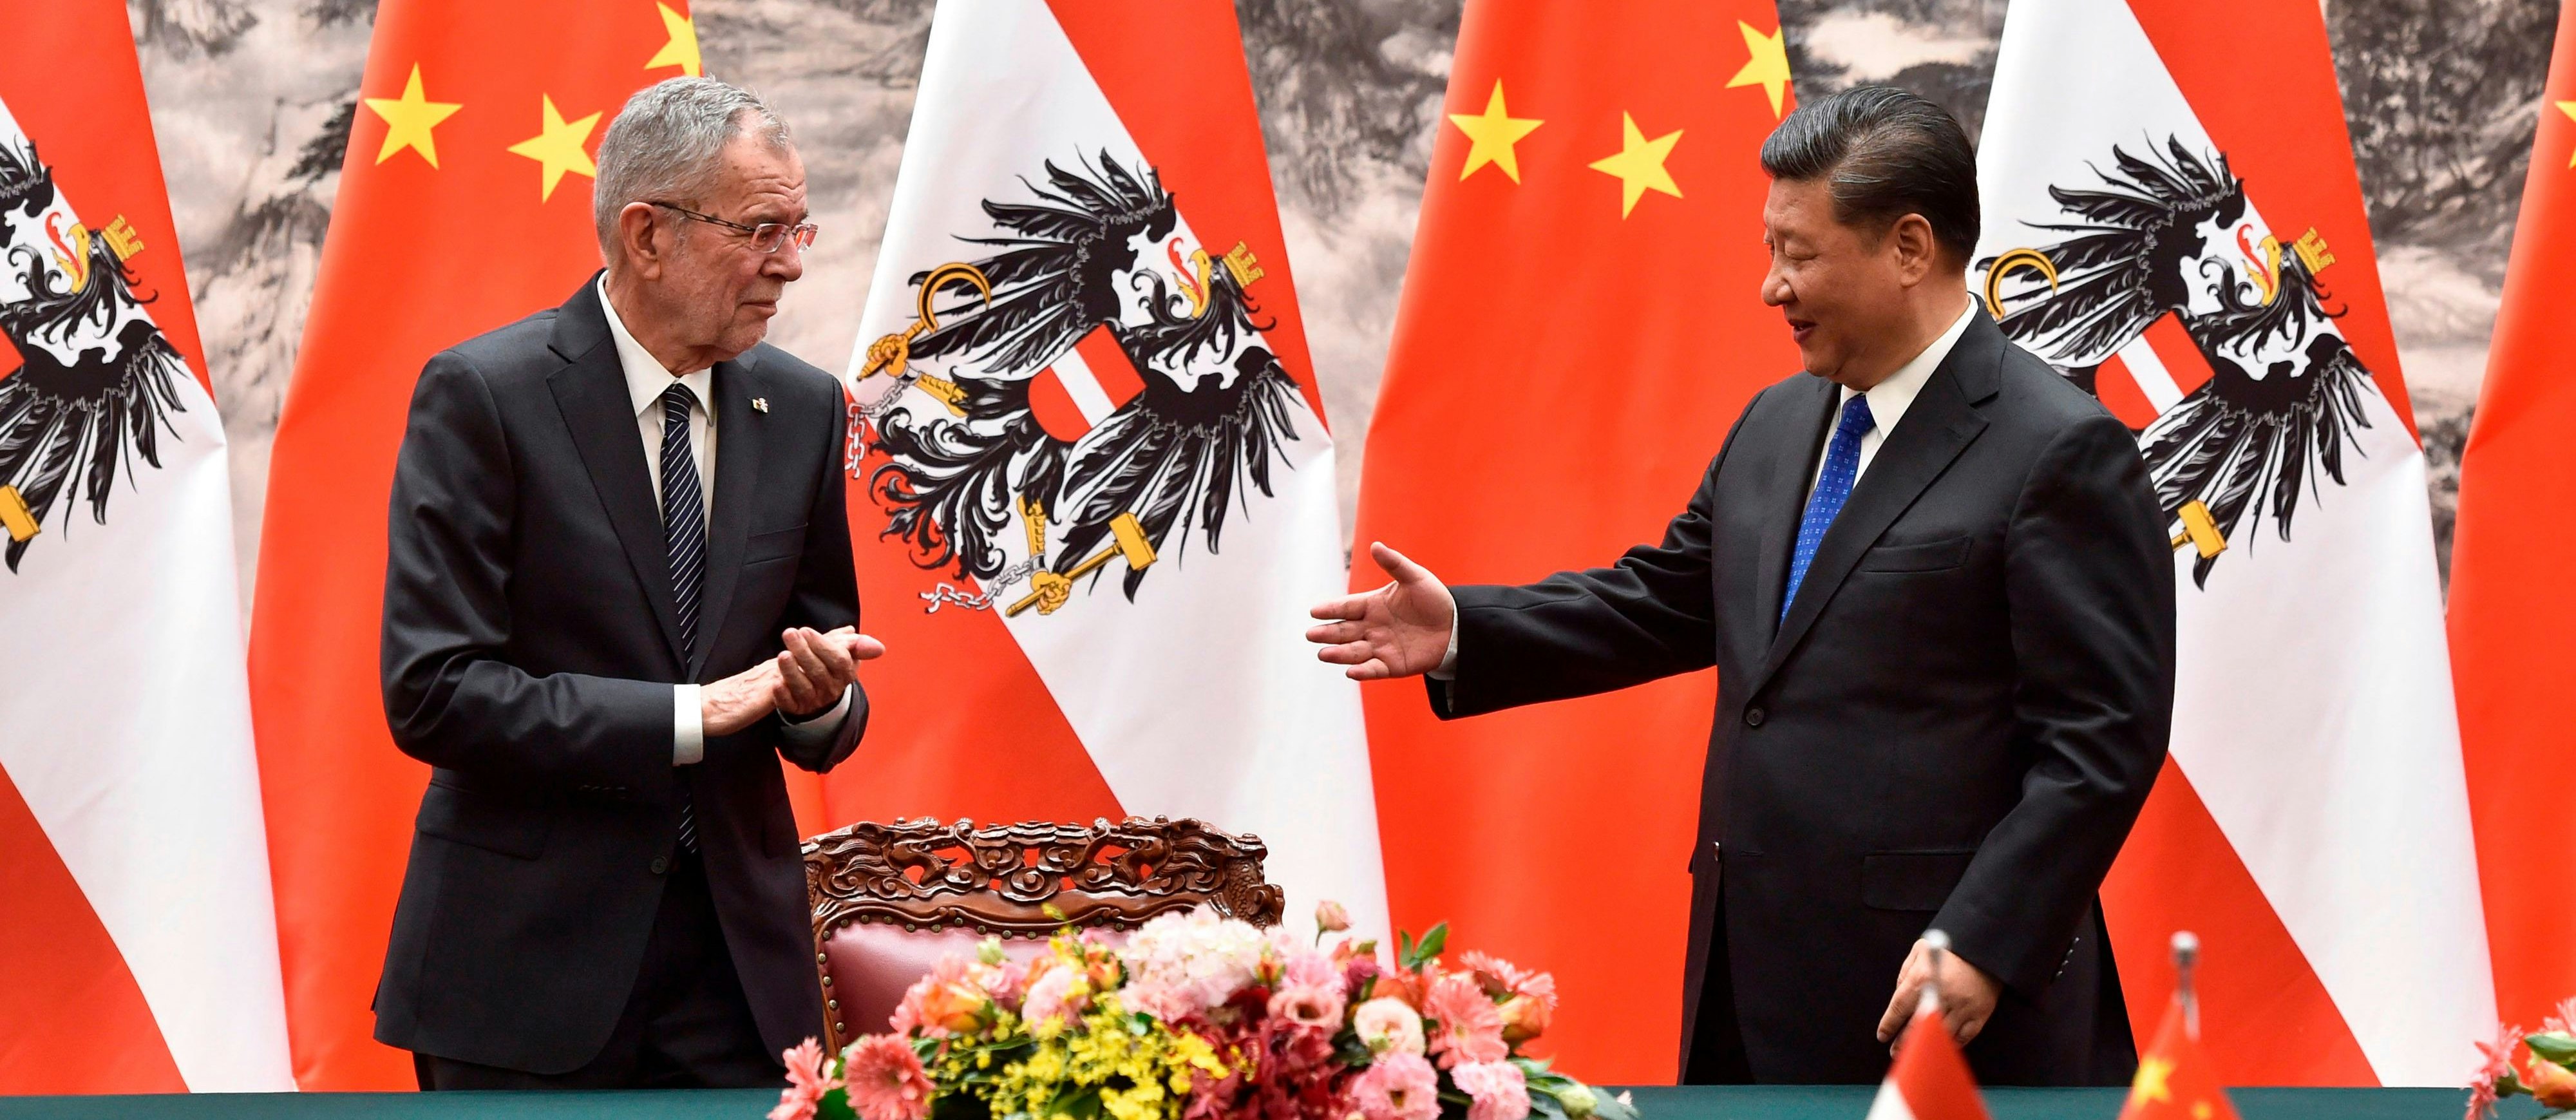 Chinas Präsident Xi Jinping (r.) mit Österreichs Präsident Alexander Van der Bellen in der Großen Halle des Volkes in Peking am 8. April 2018 